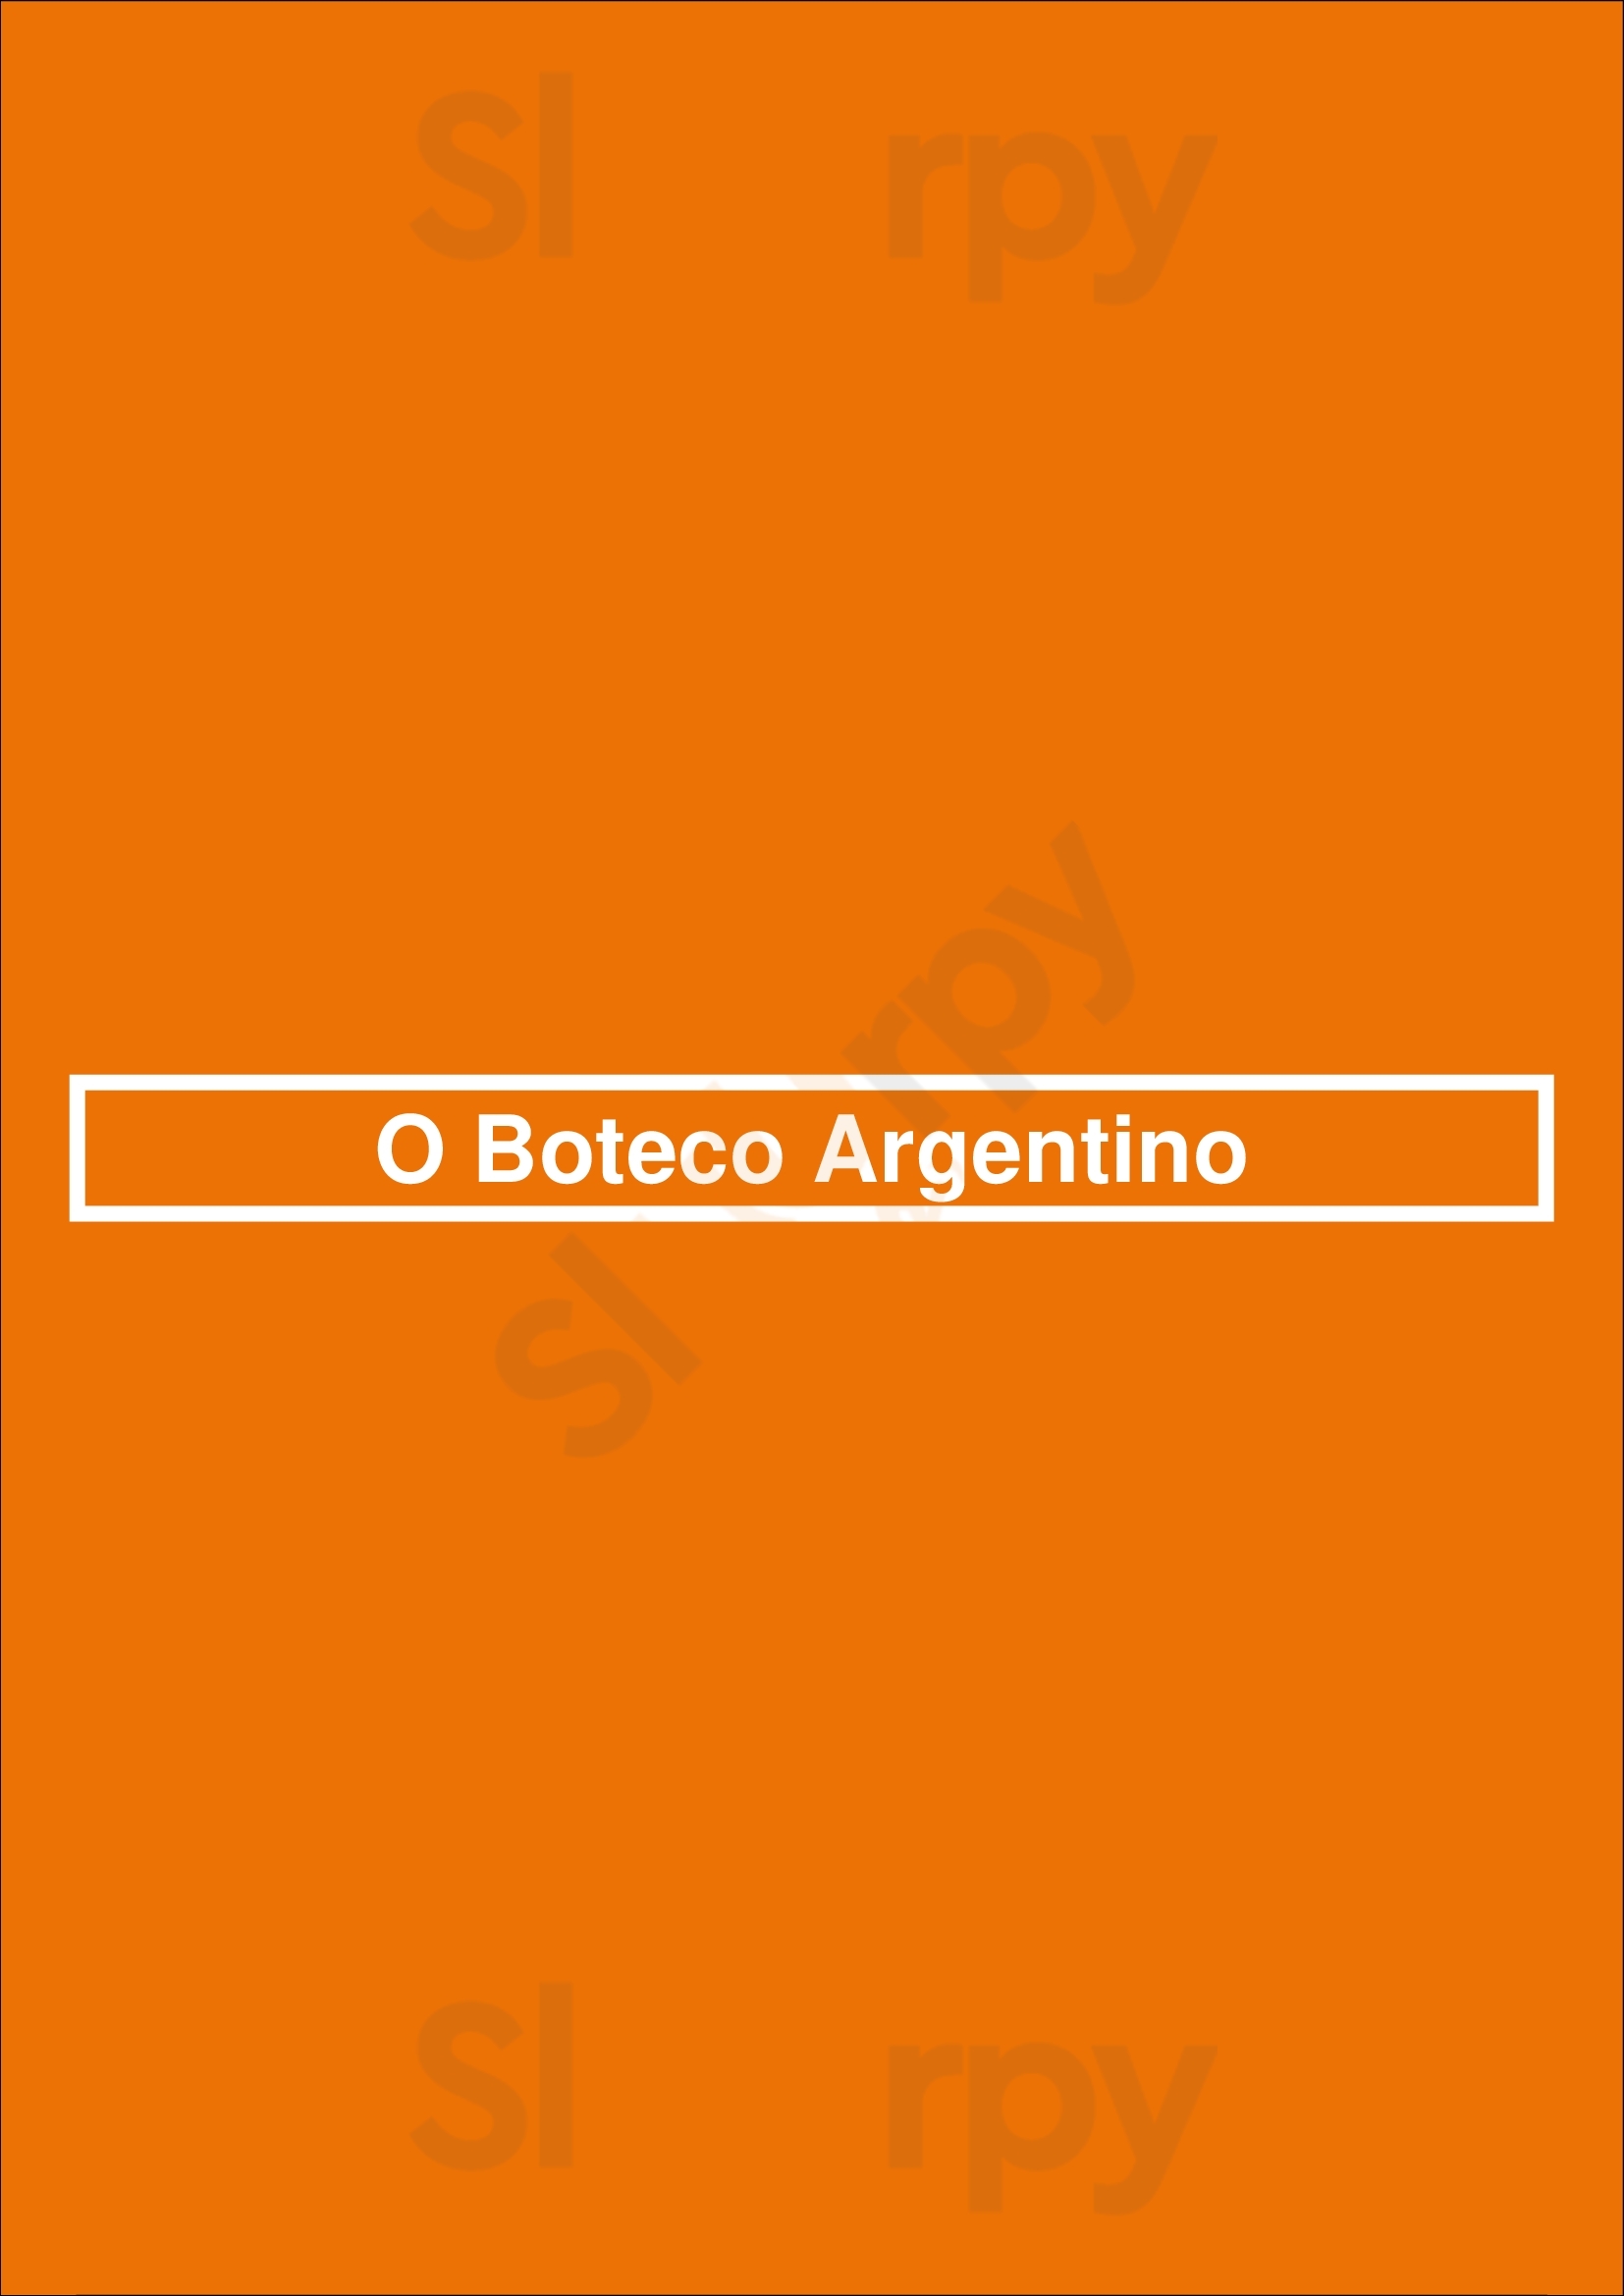 O Boteco Argentino São Paulo Menu - 1